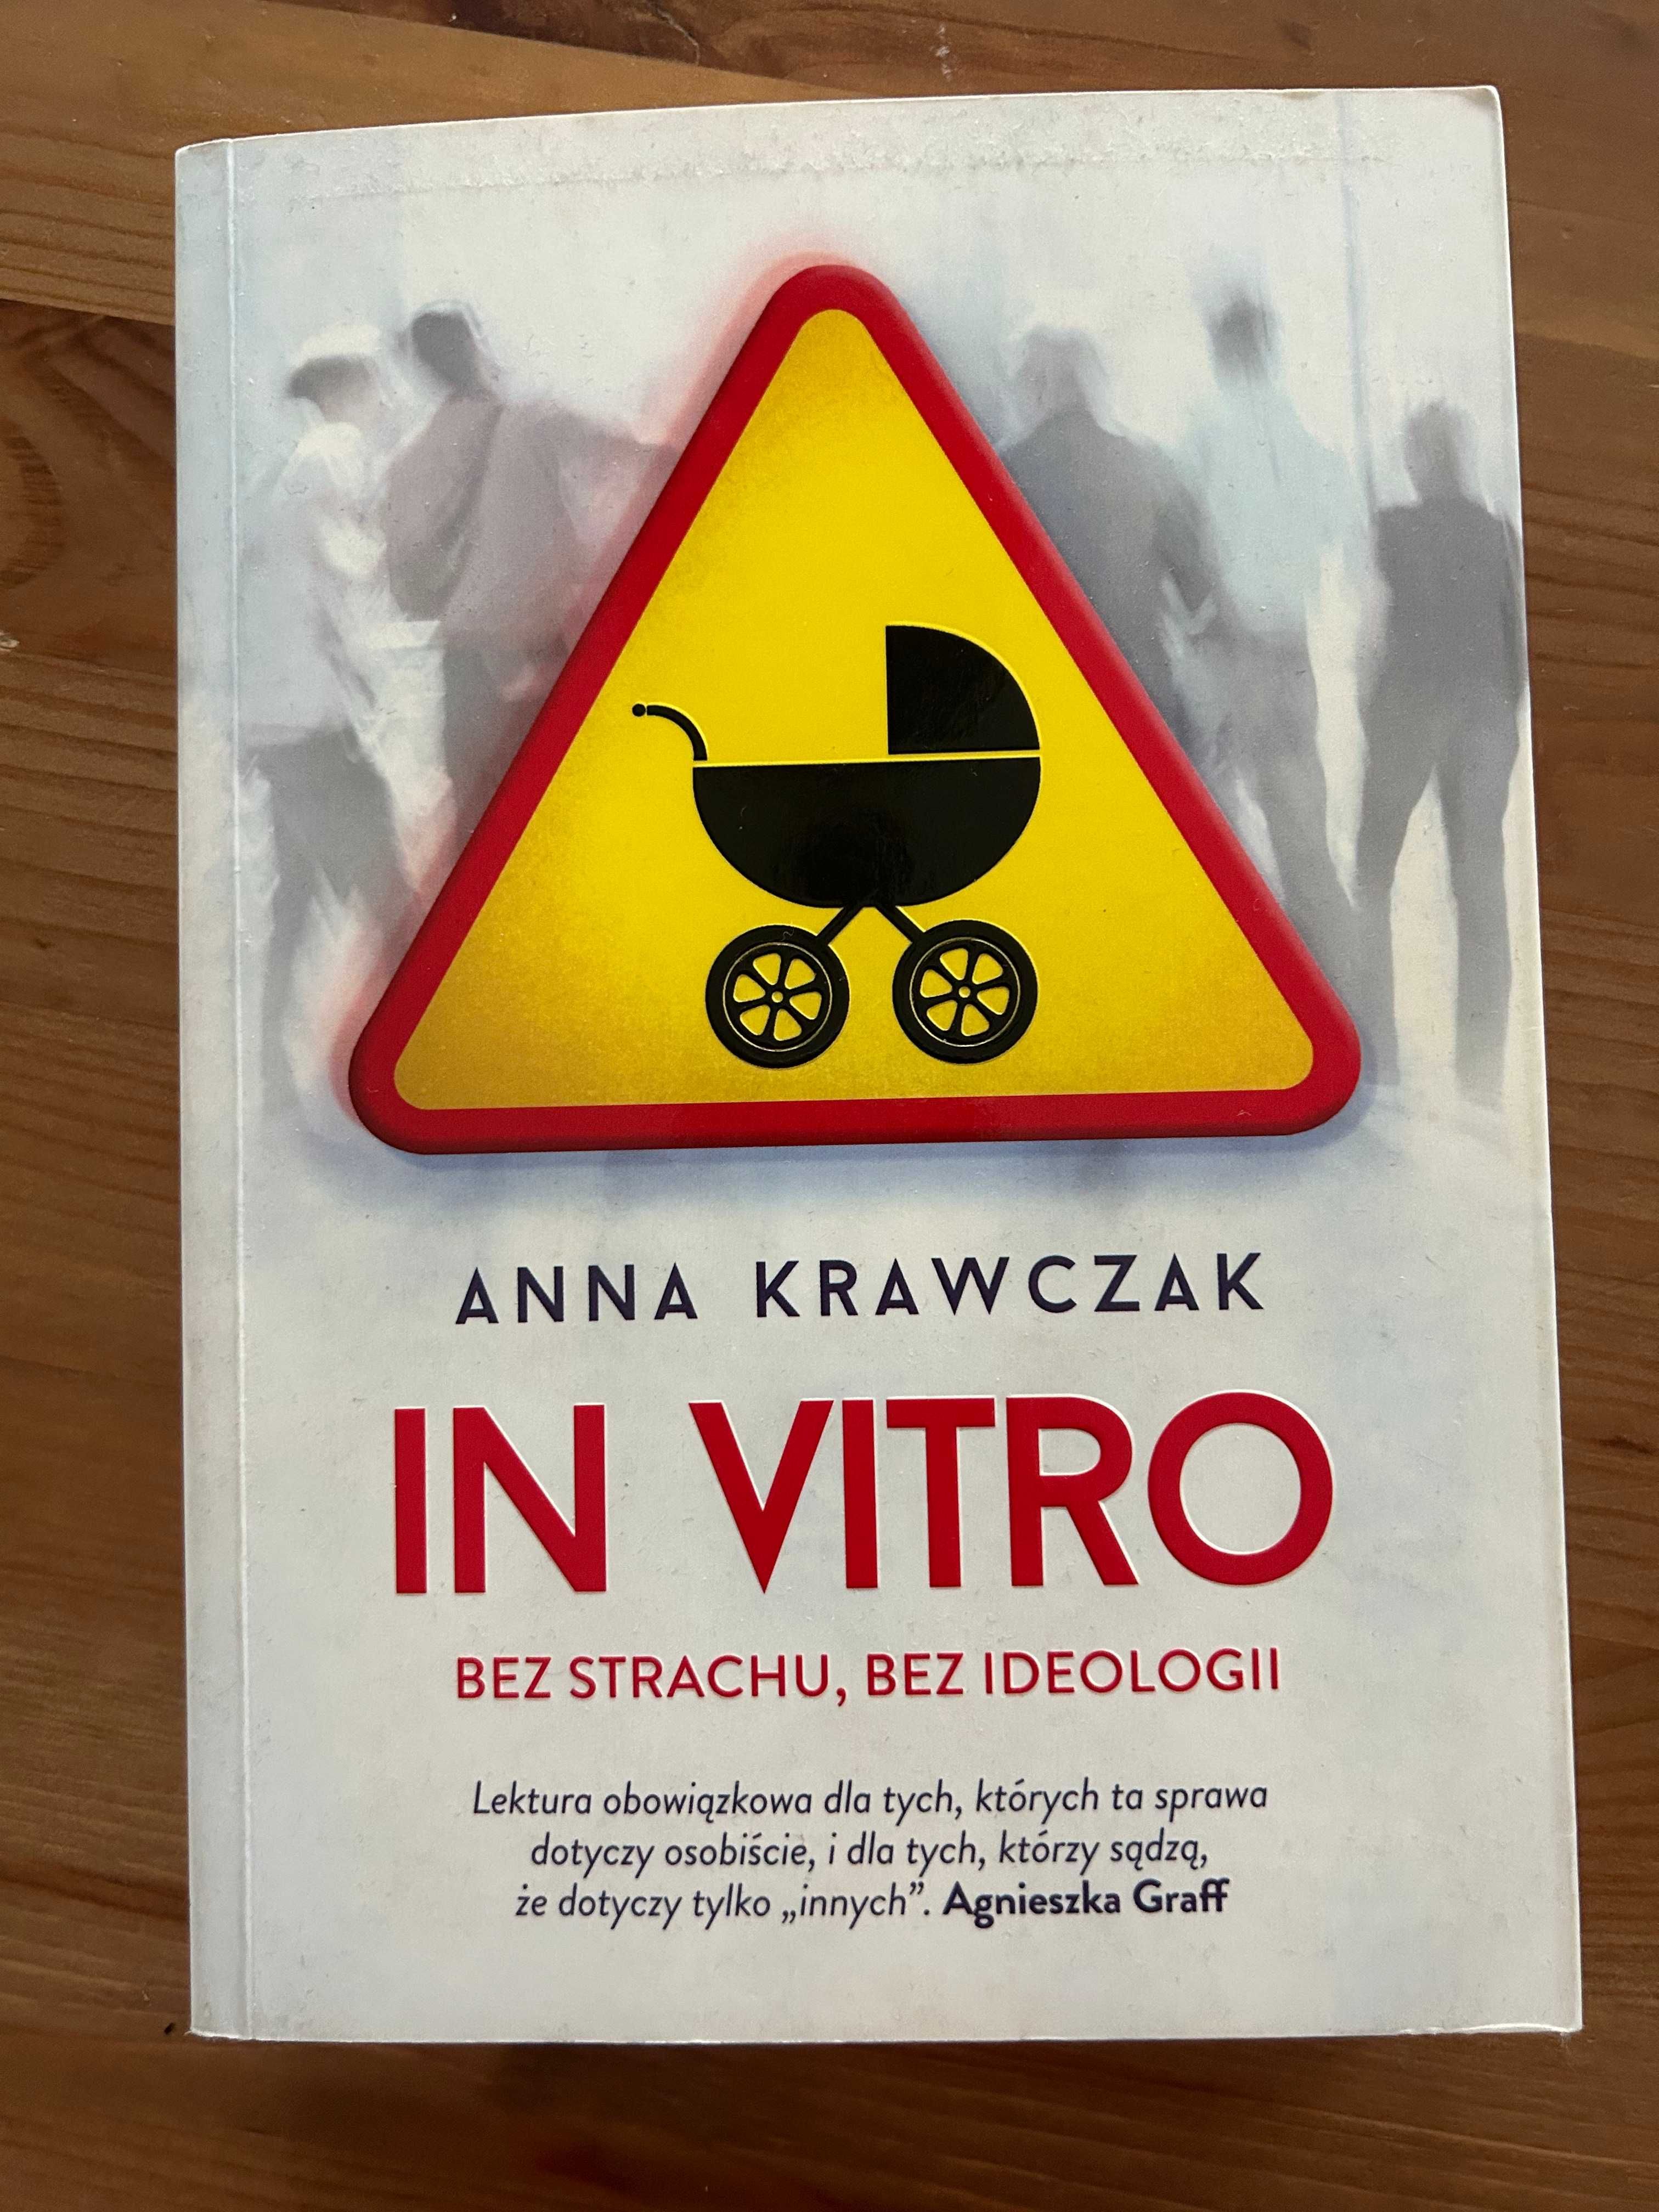 Książka "In vitro. Bez strachu, bez ideologii" Anna Krawczak